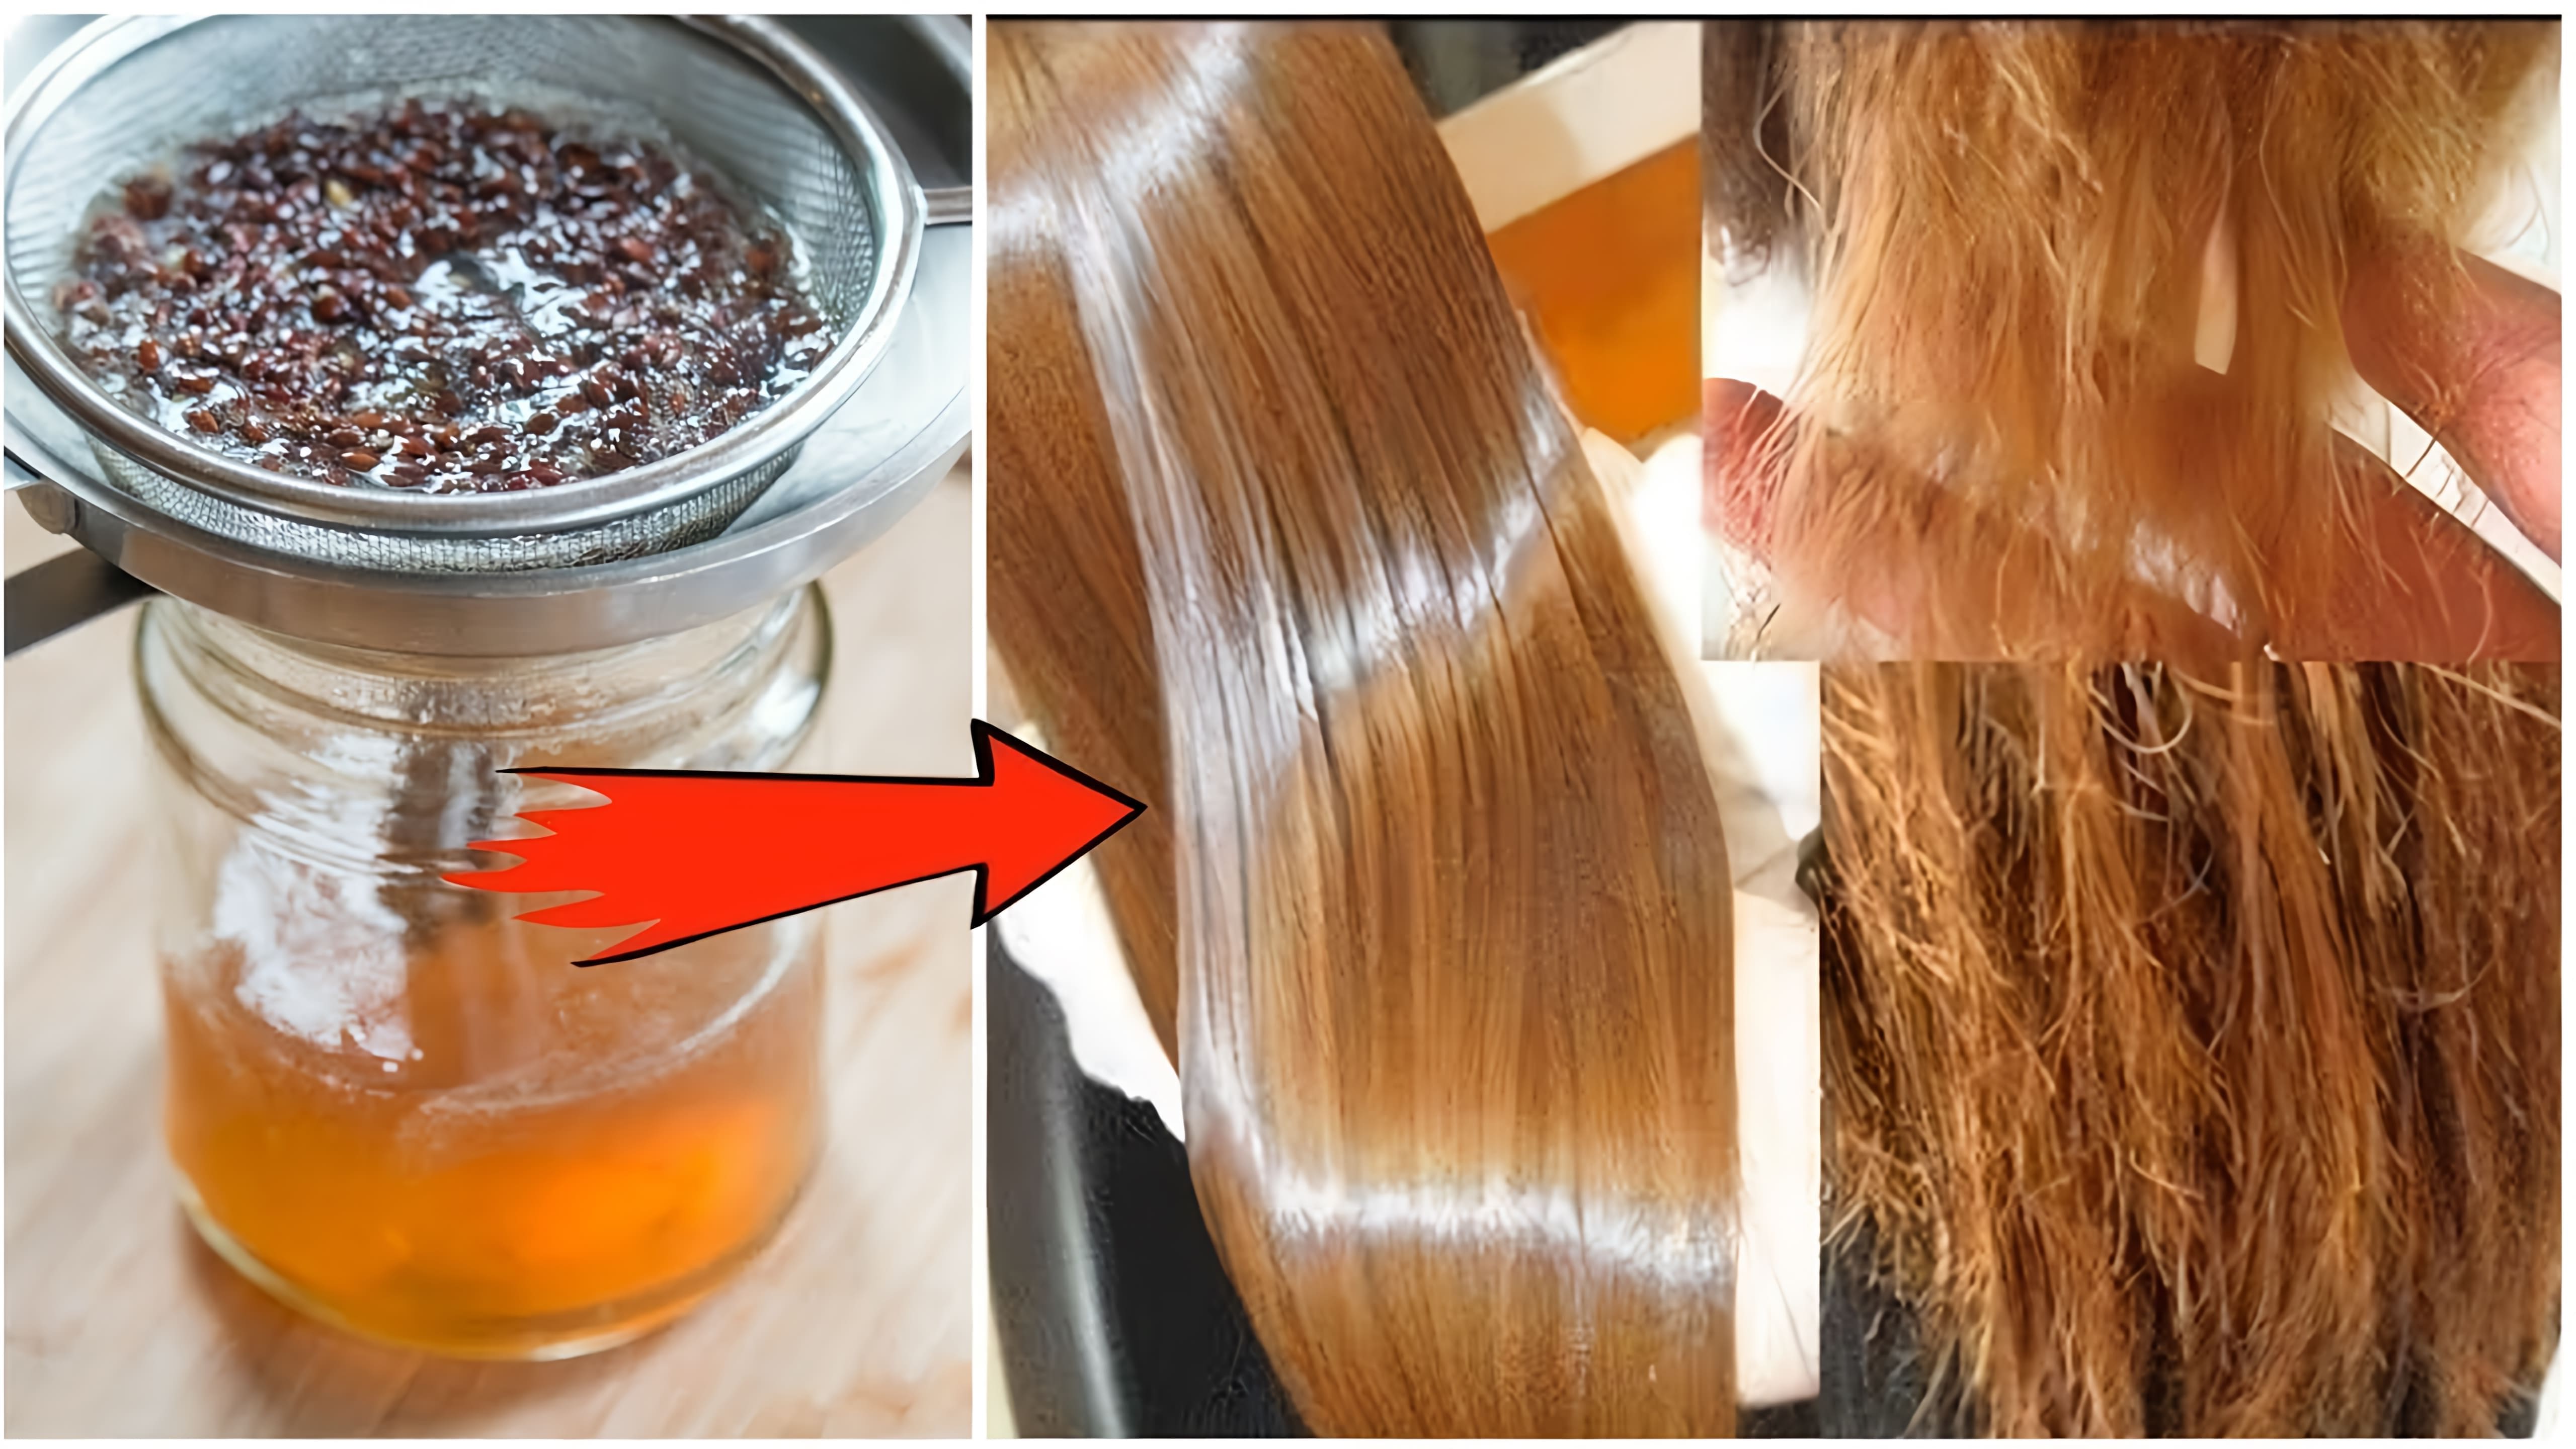 В этом видео демонстрируется рецепт приготовления геля из льняного семени для ухода за волосами